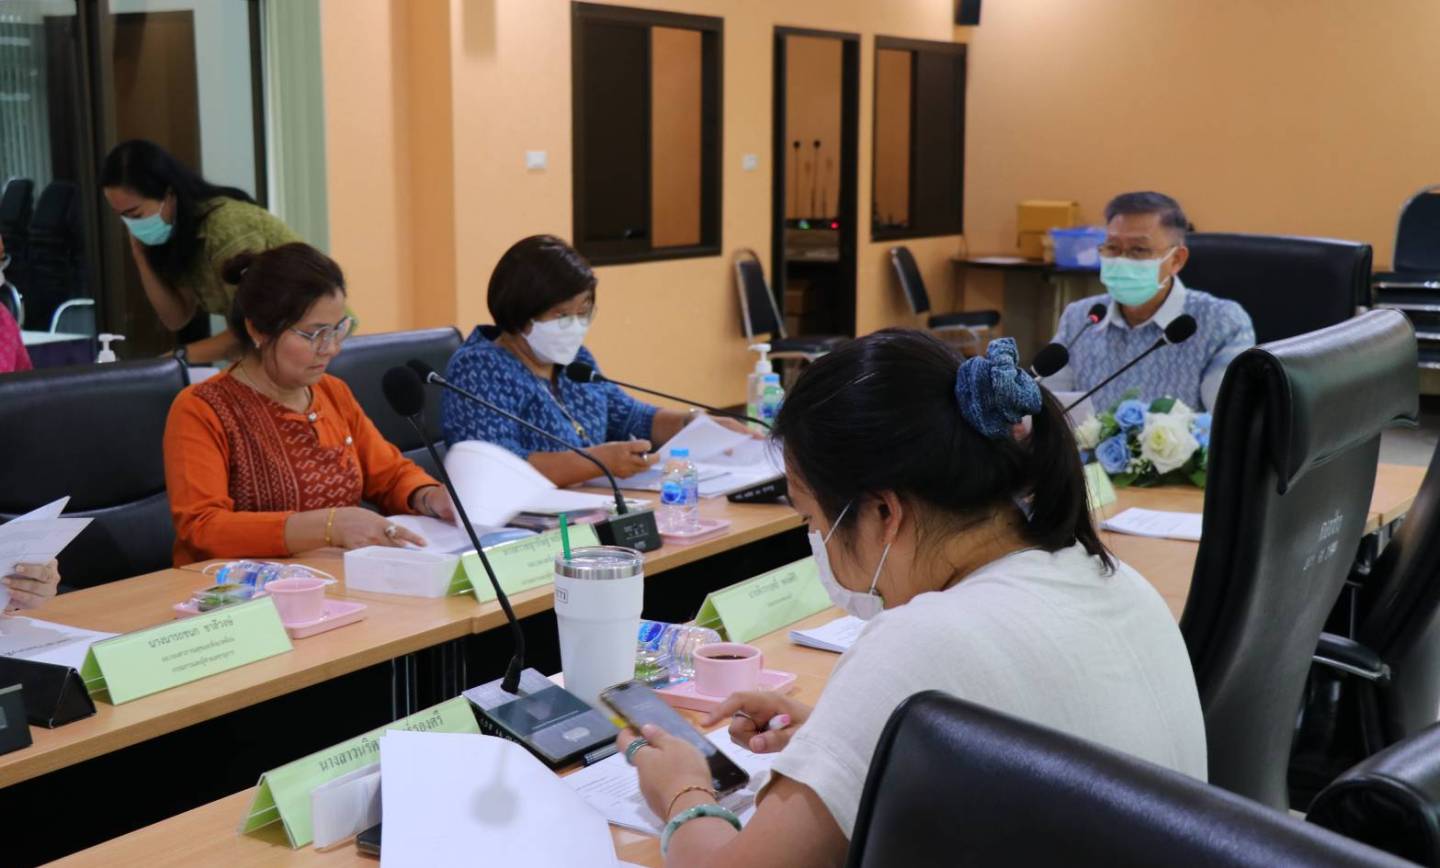 ประชุมคณะอนุกรรมการกองทุนหลักประกันสุขภาพเทศบาลเมืองปากช่อง ครั้งที่ 4/2566